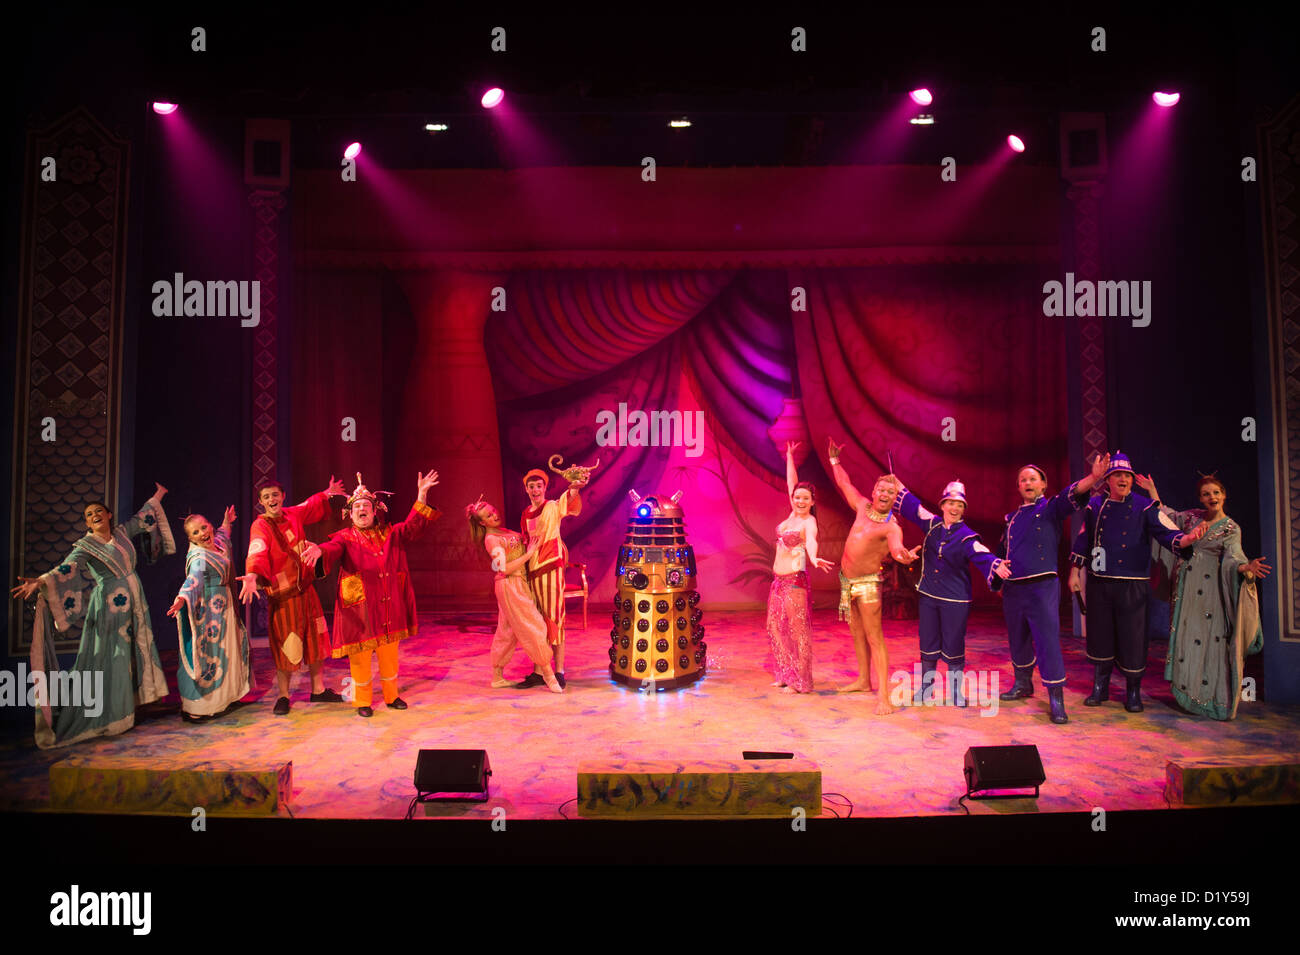 Traditionelle Weihnachts-Unterhaltung: "Aladdin" pantomime mit einem Dalek Aberystwyth Arts Centre Stockfoto